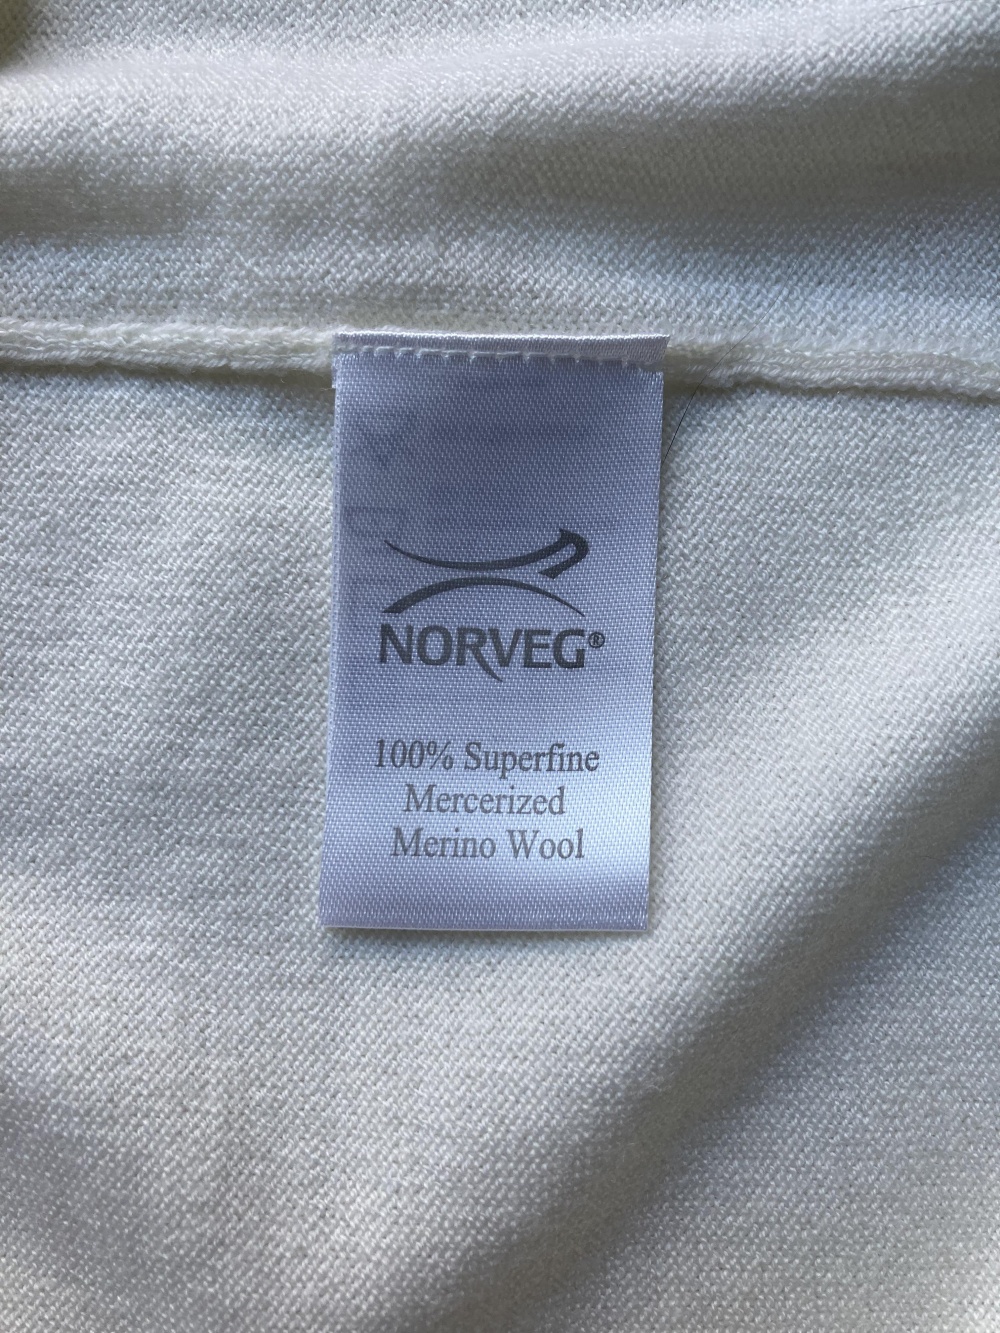 Свитер “ Norveg “, XL размер